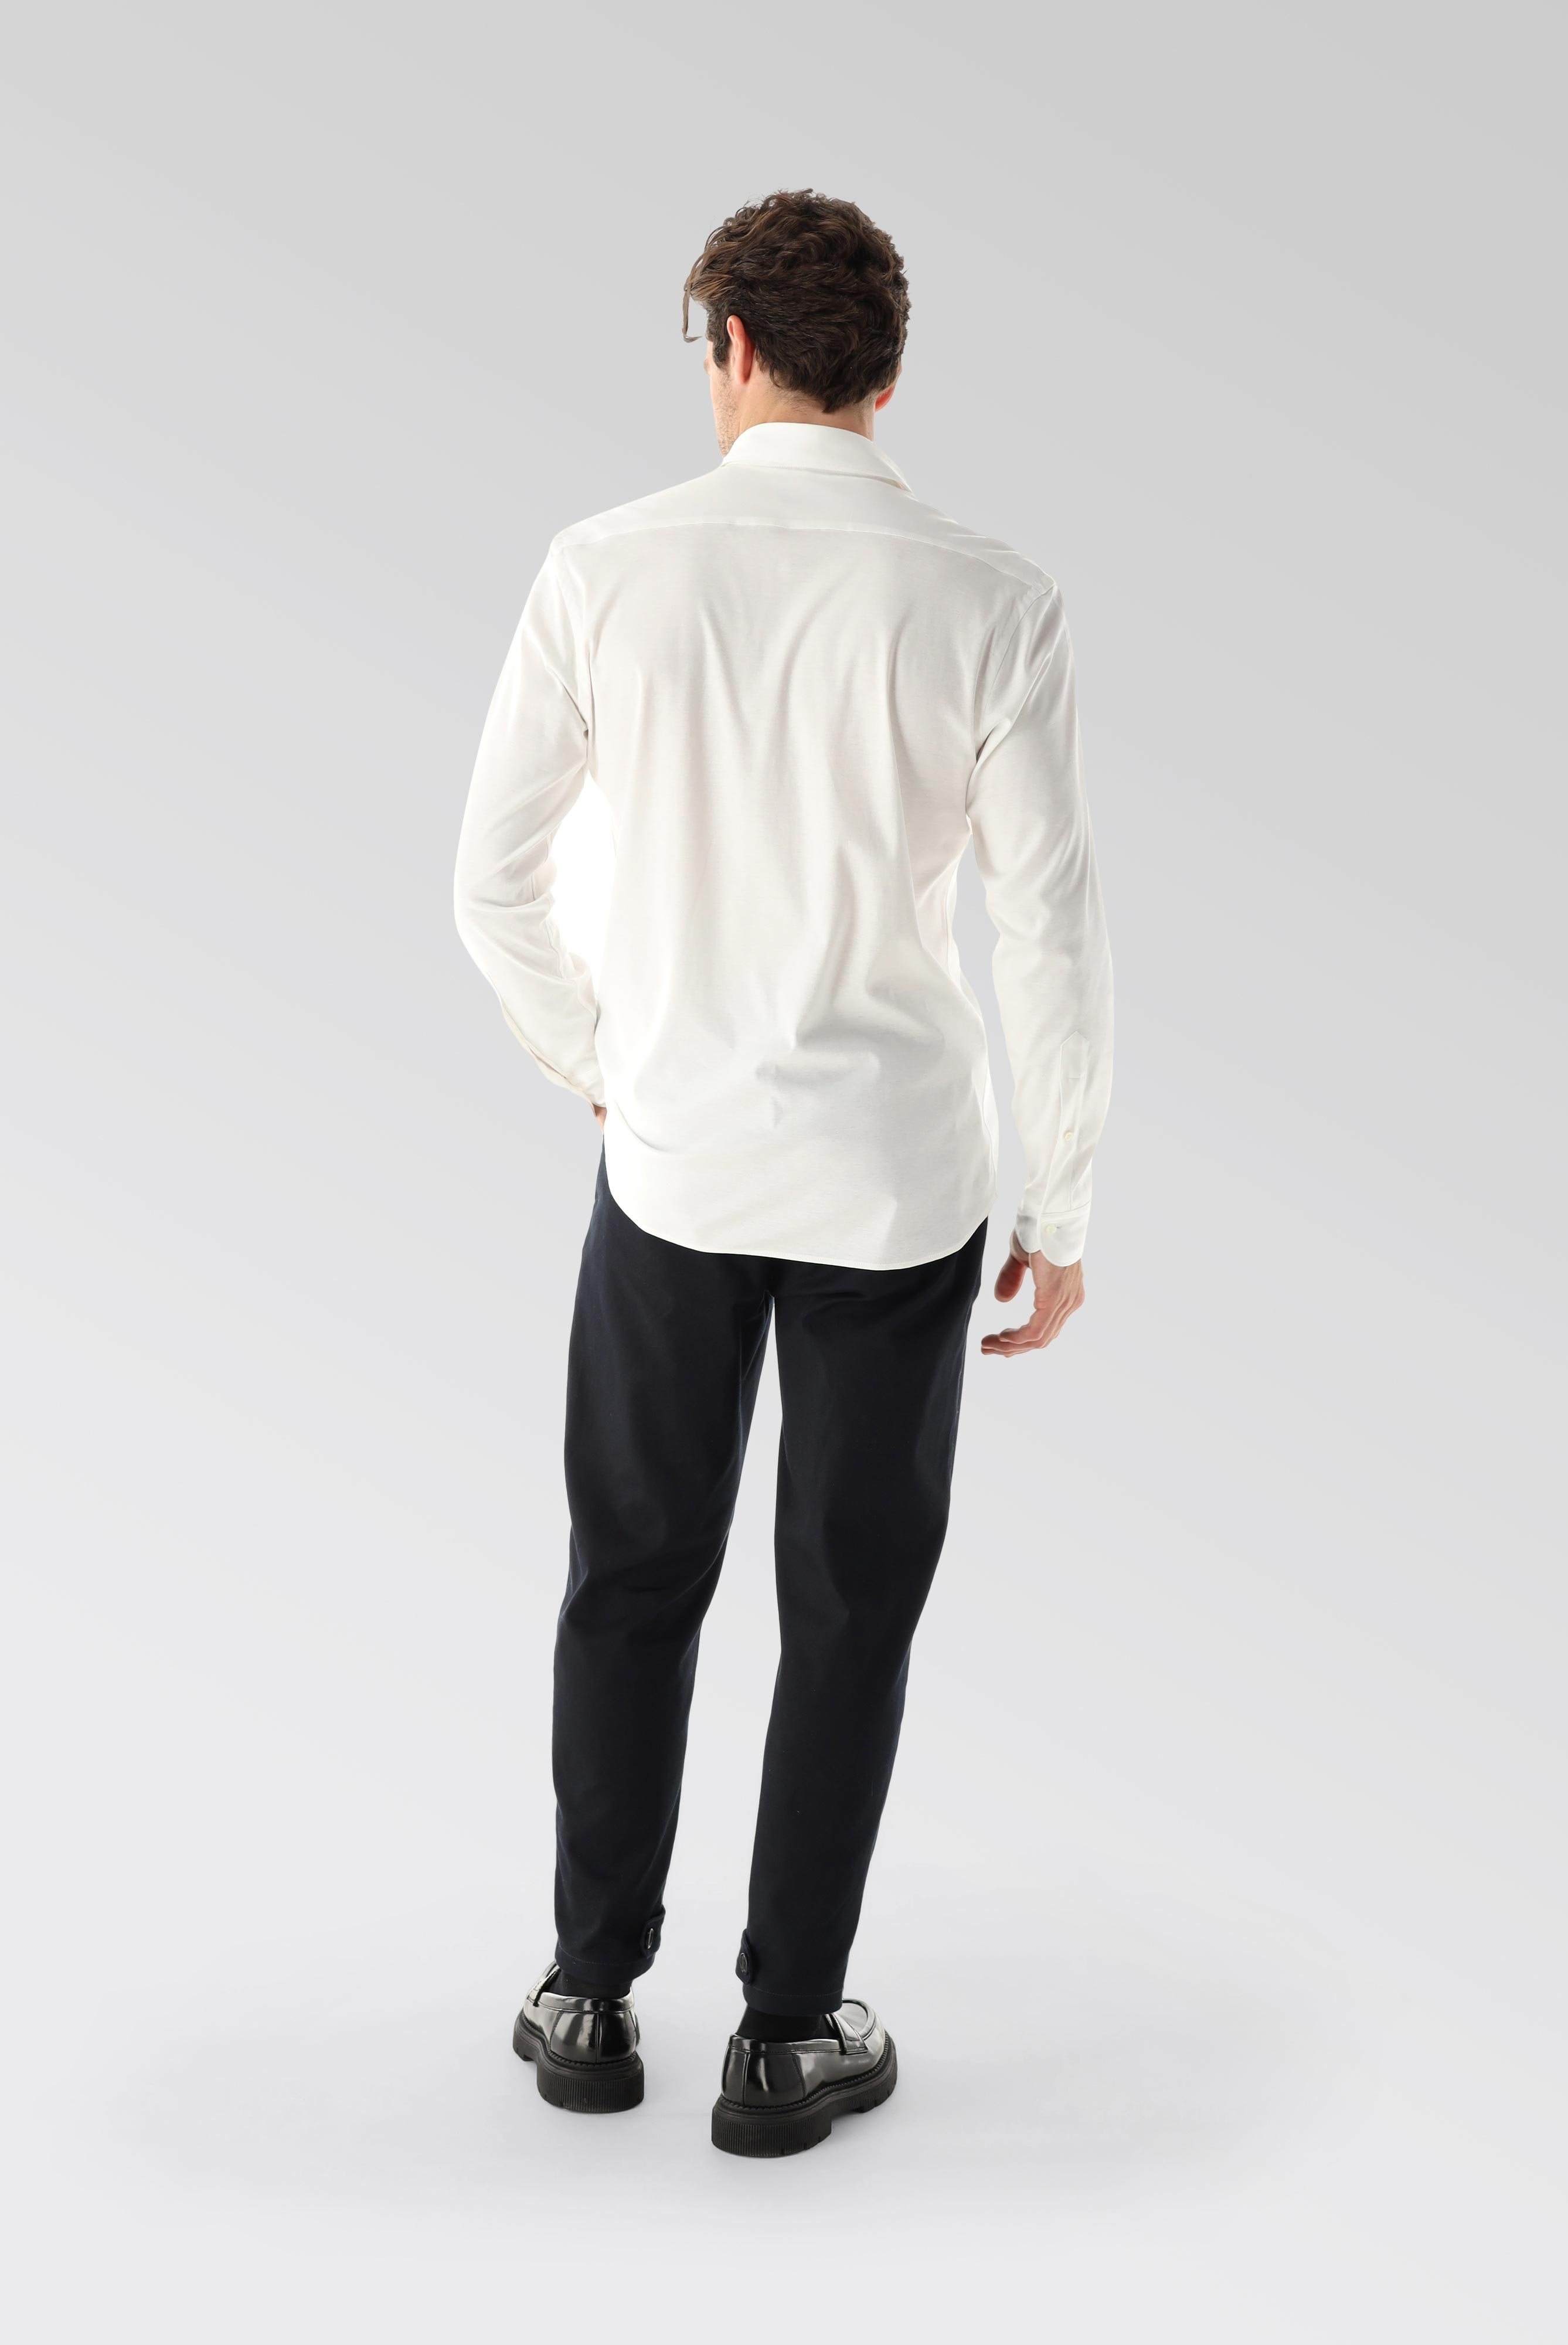 Bügelleichte Hemden+Jersey Hemd mit glänzender Optik Tailor Fit+20.1683.UC.180031.000.L